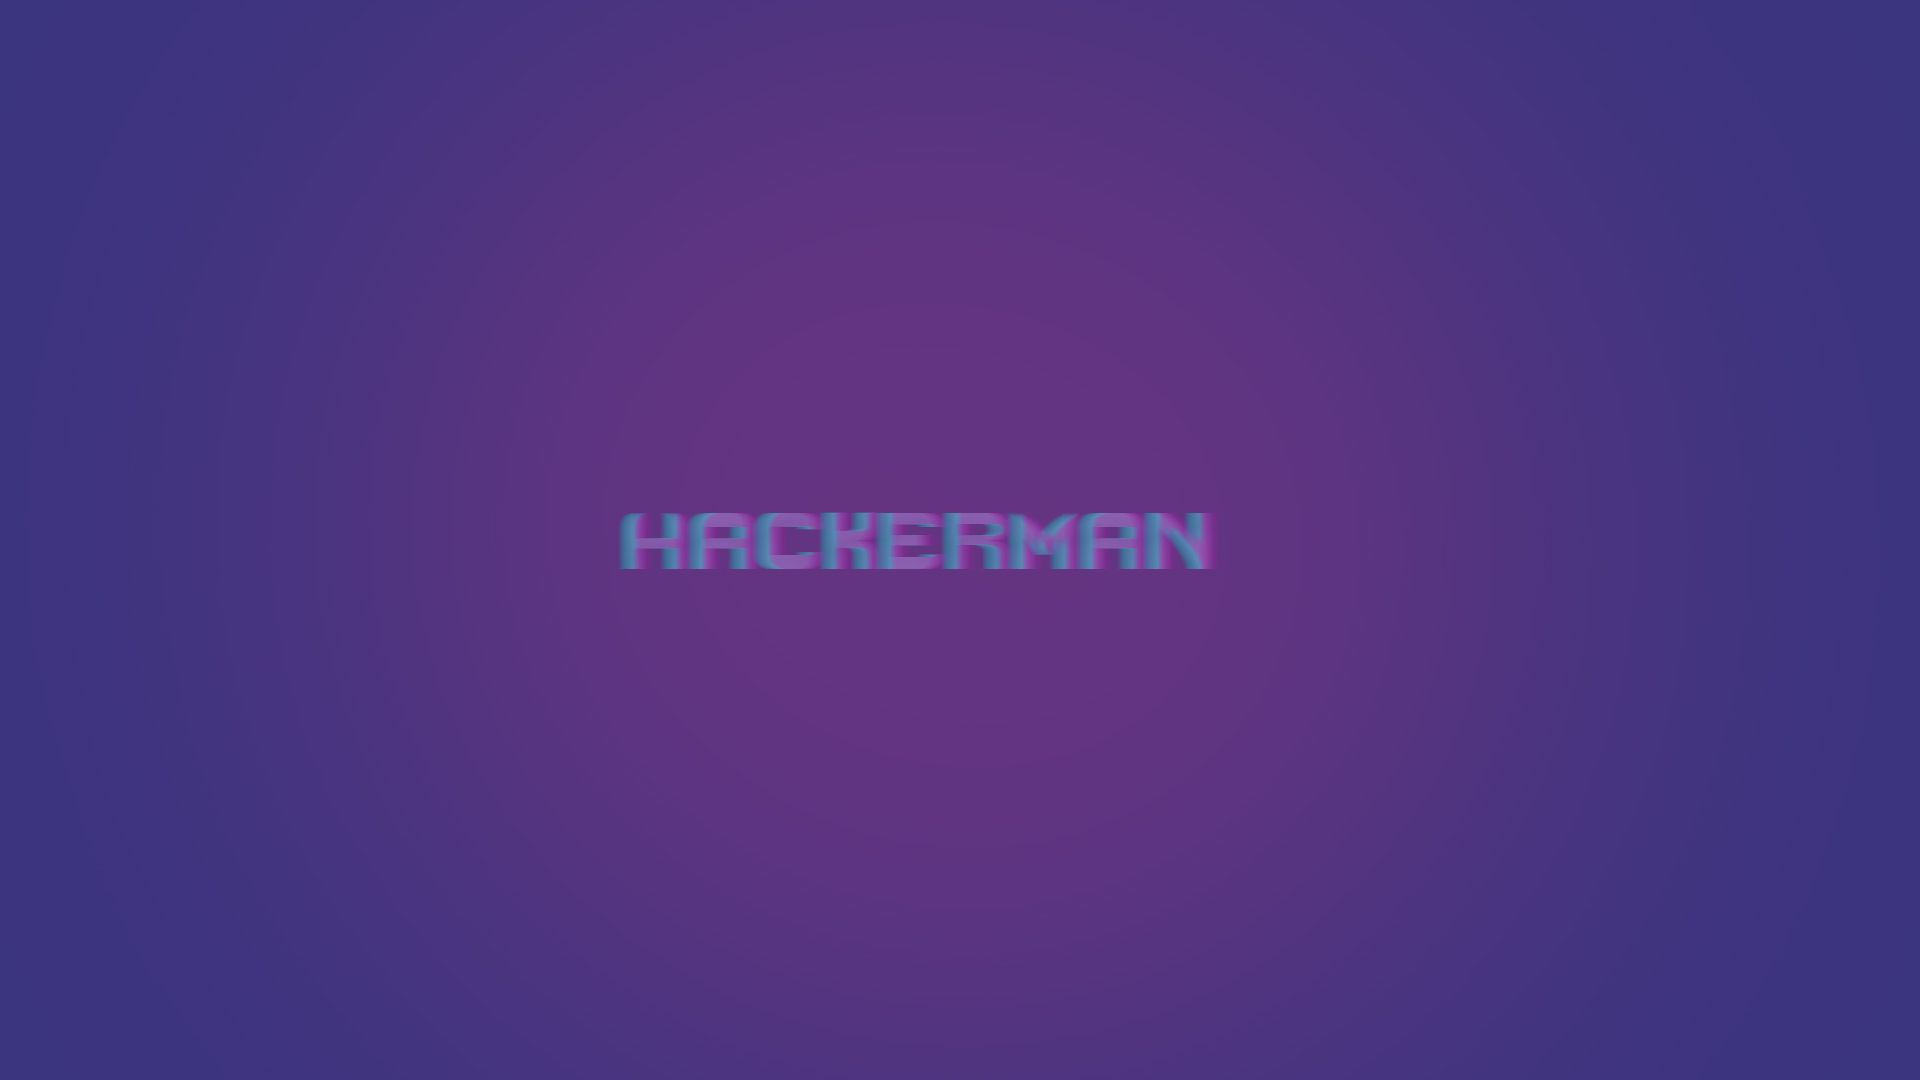 Hackerman (1920x1080p)